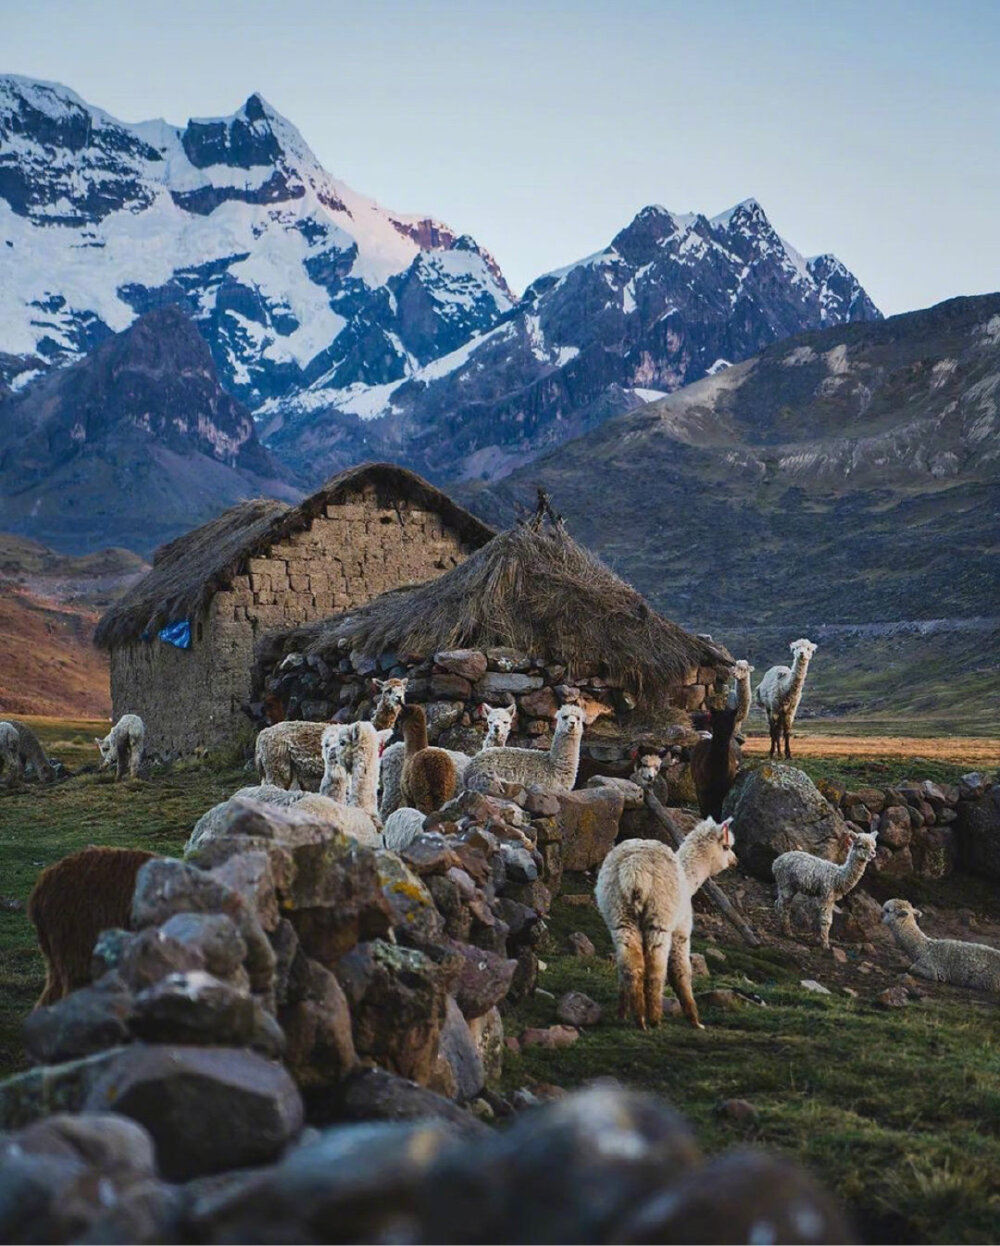 安第斯山脉是南美洲最美丽的风景线之一,这里有峻岭山峰,也有白雪皑皑